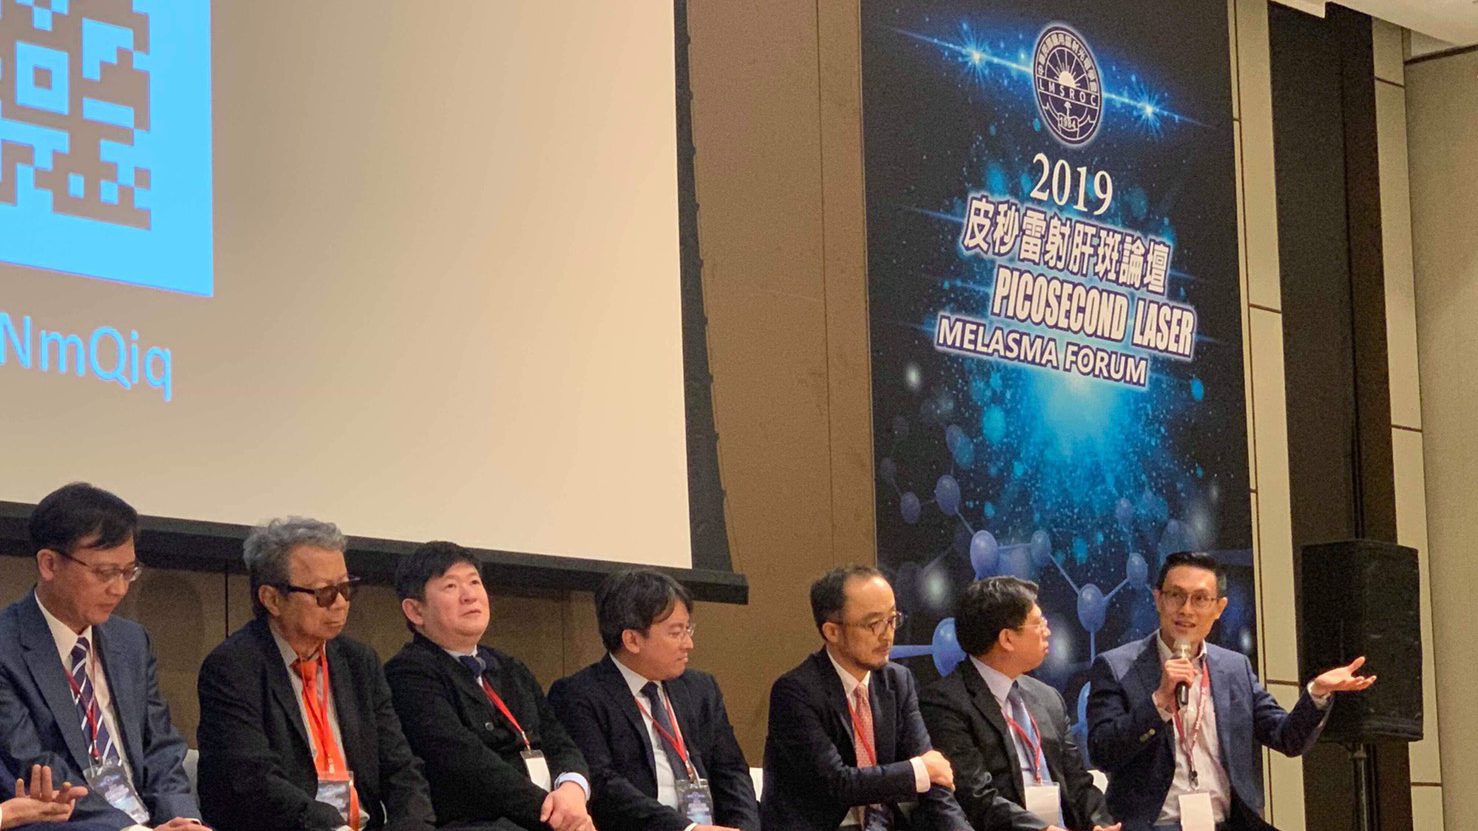 “Picosecond Laser Melasma Forum” in Taipei, Taiwan